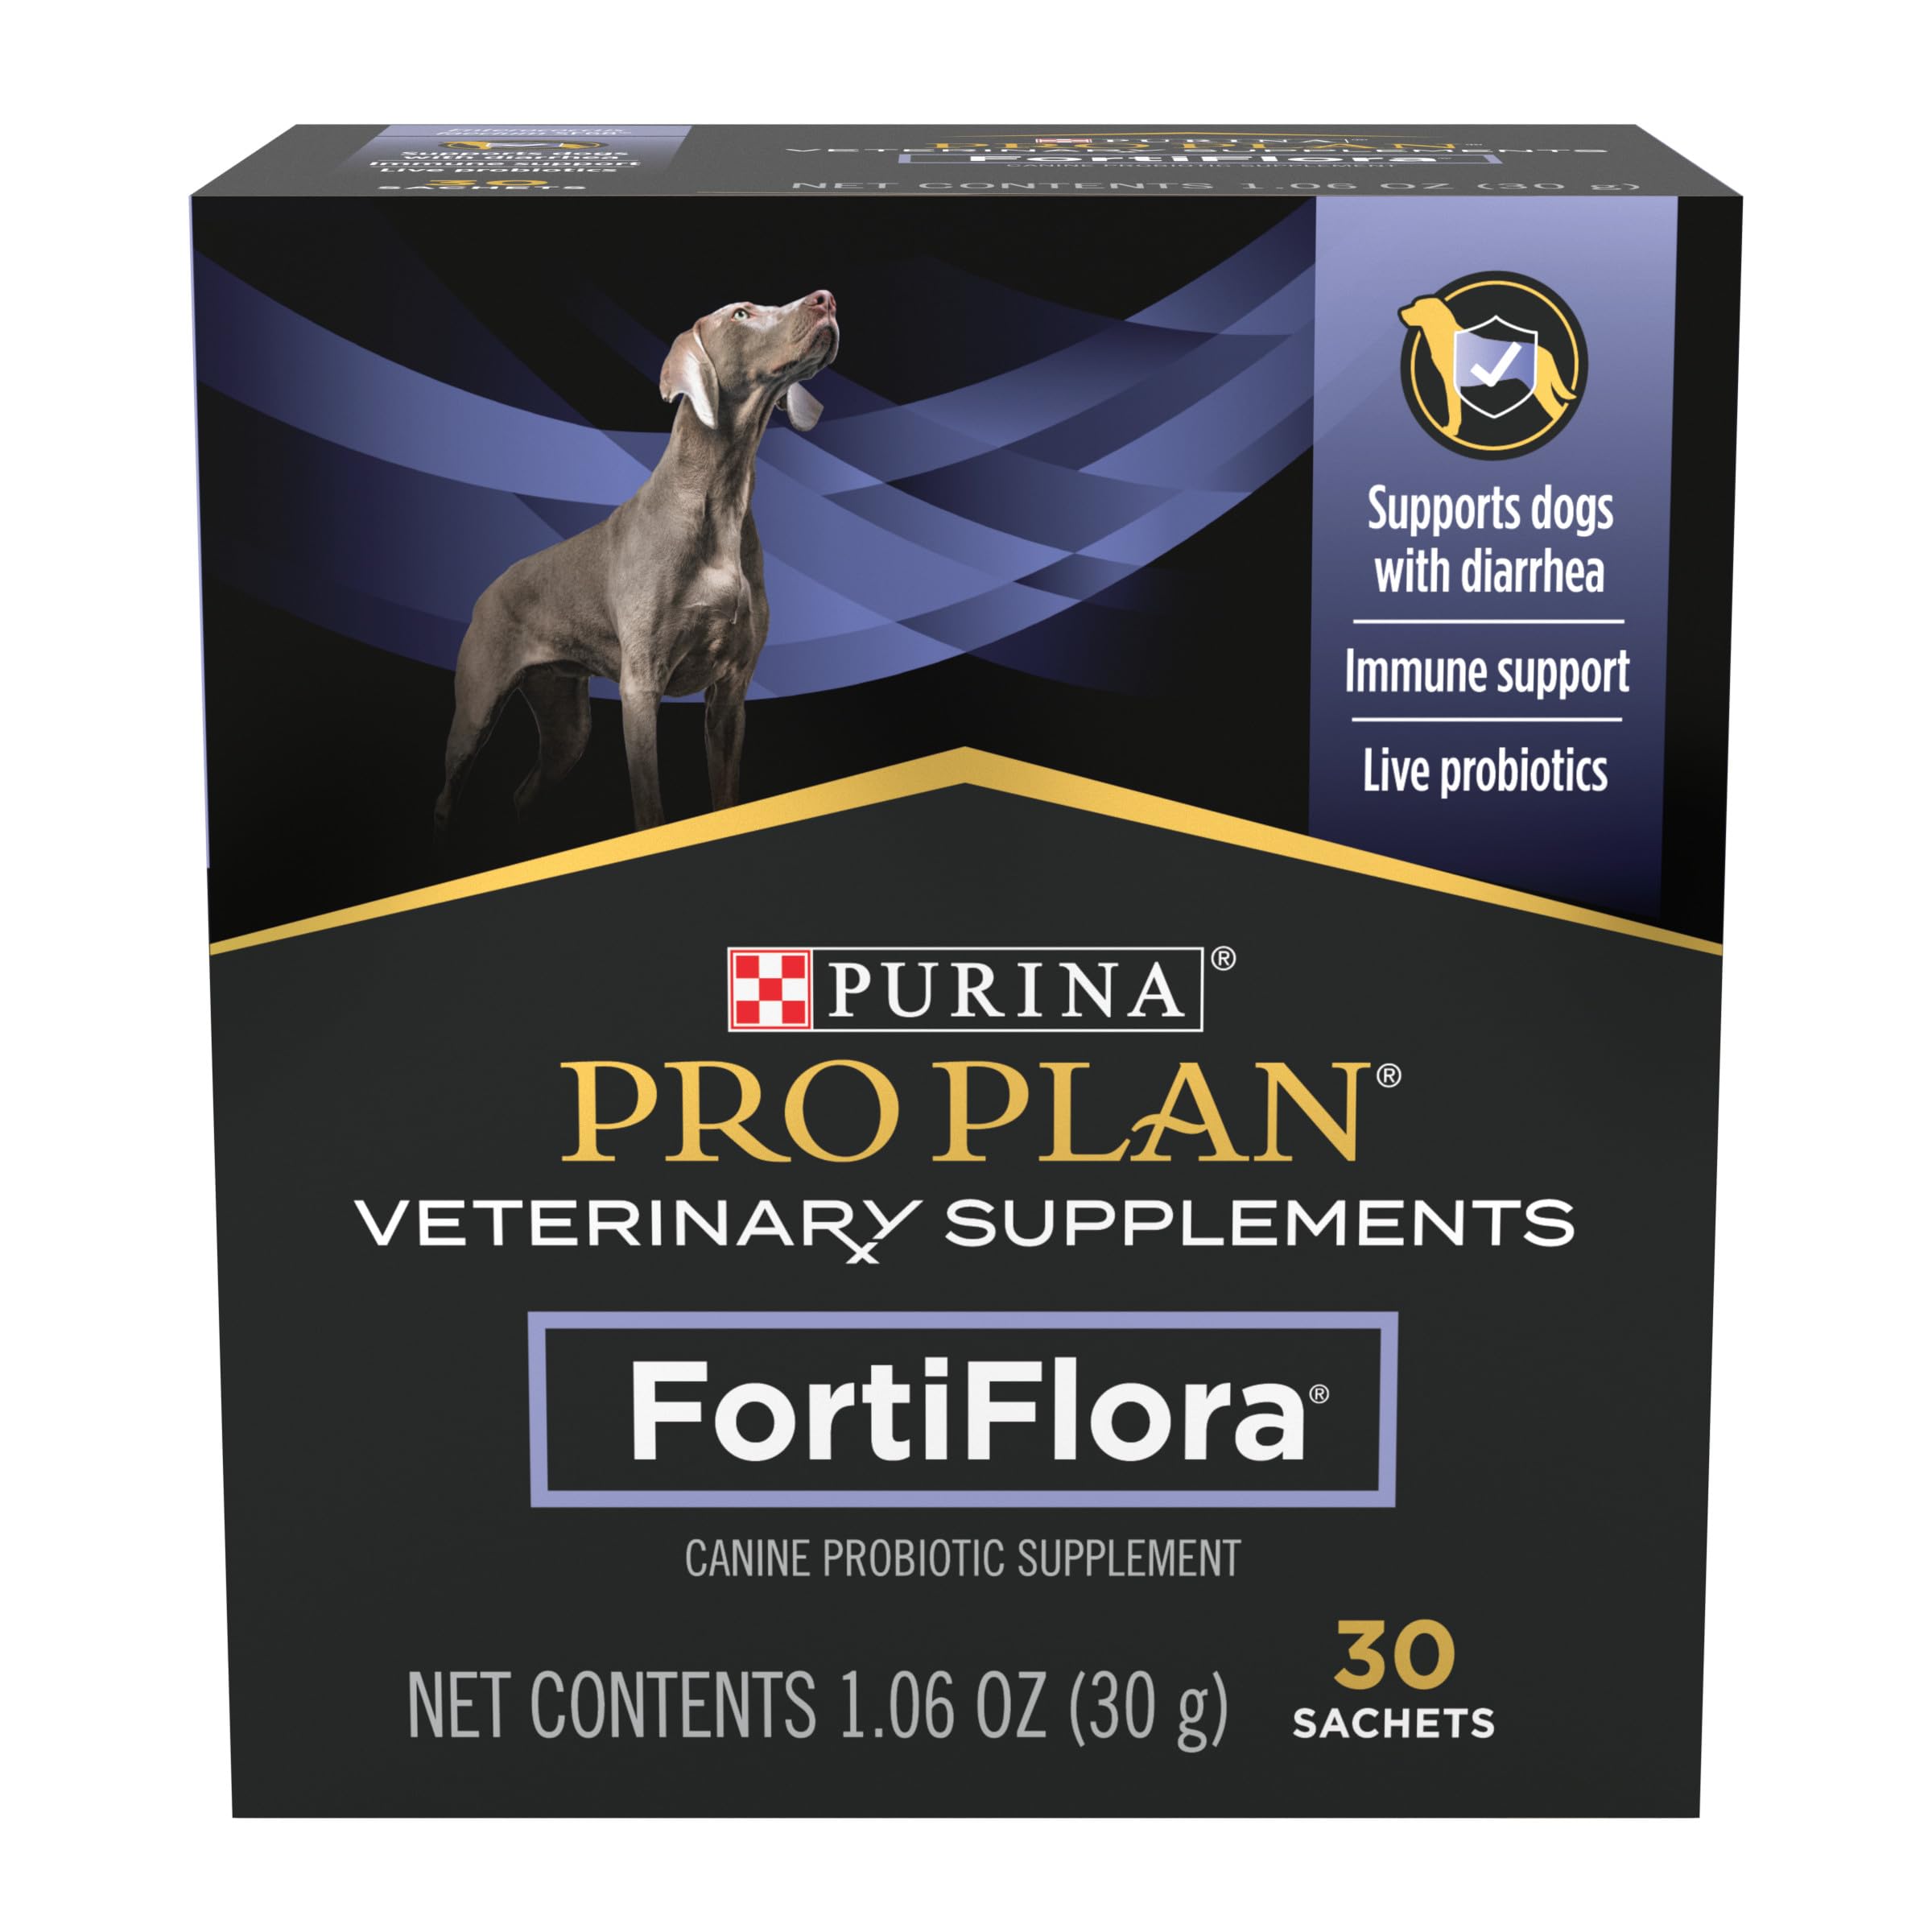 Purina Pro Plan Veterinaire Supplementen FortiFlora Probiotisch Supplement voor Honden